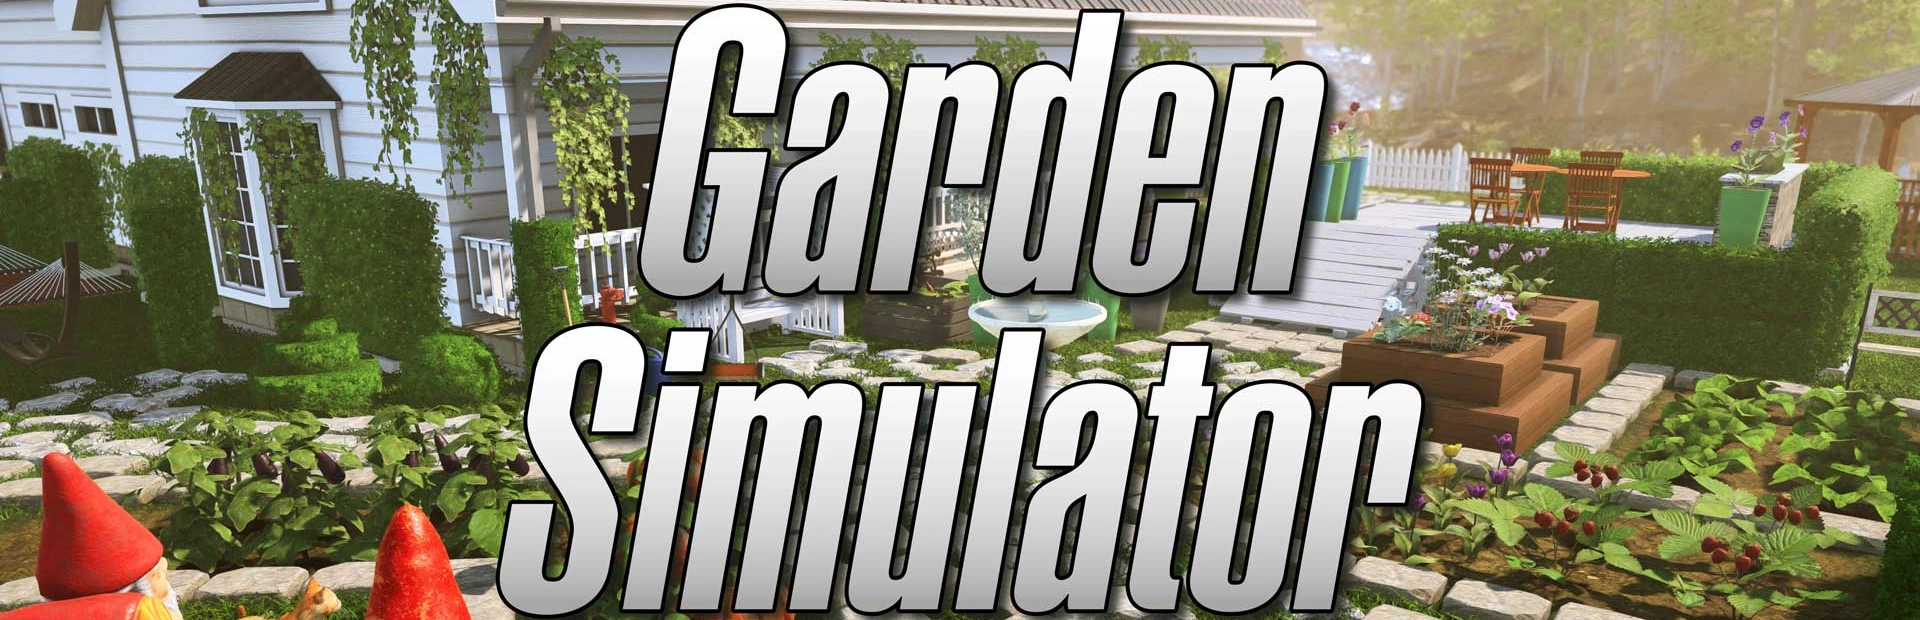 دانلود بازی Garden Simulator برای کامپیوتر | گیمباتو